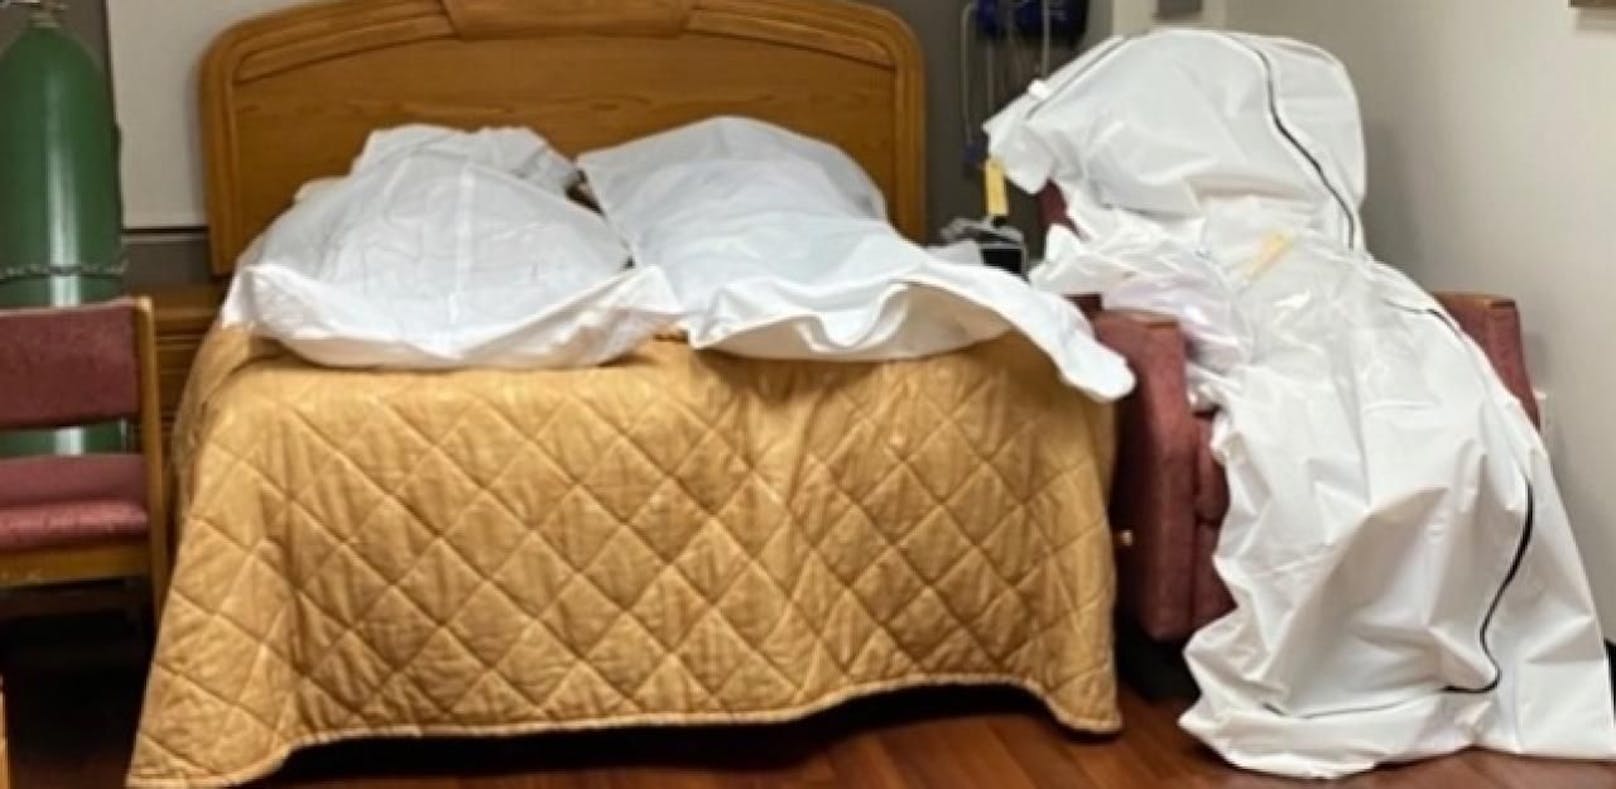 Detroit: Auf Betten und Sofas liegen Leichensäcke